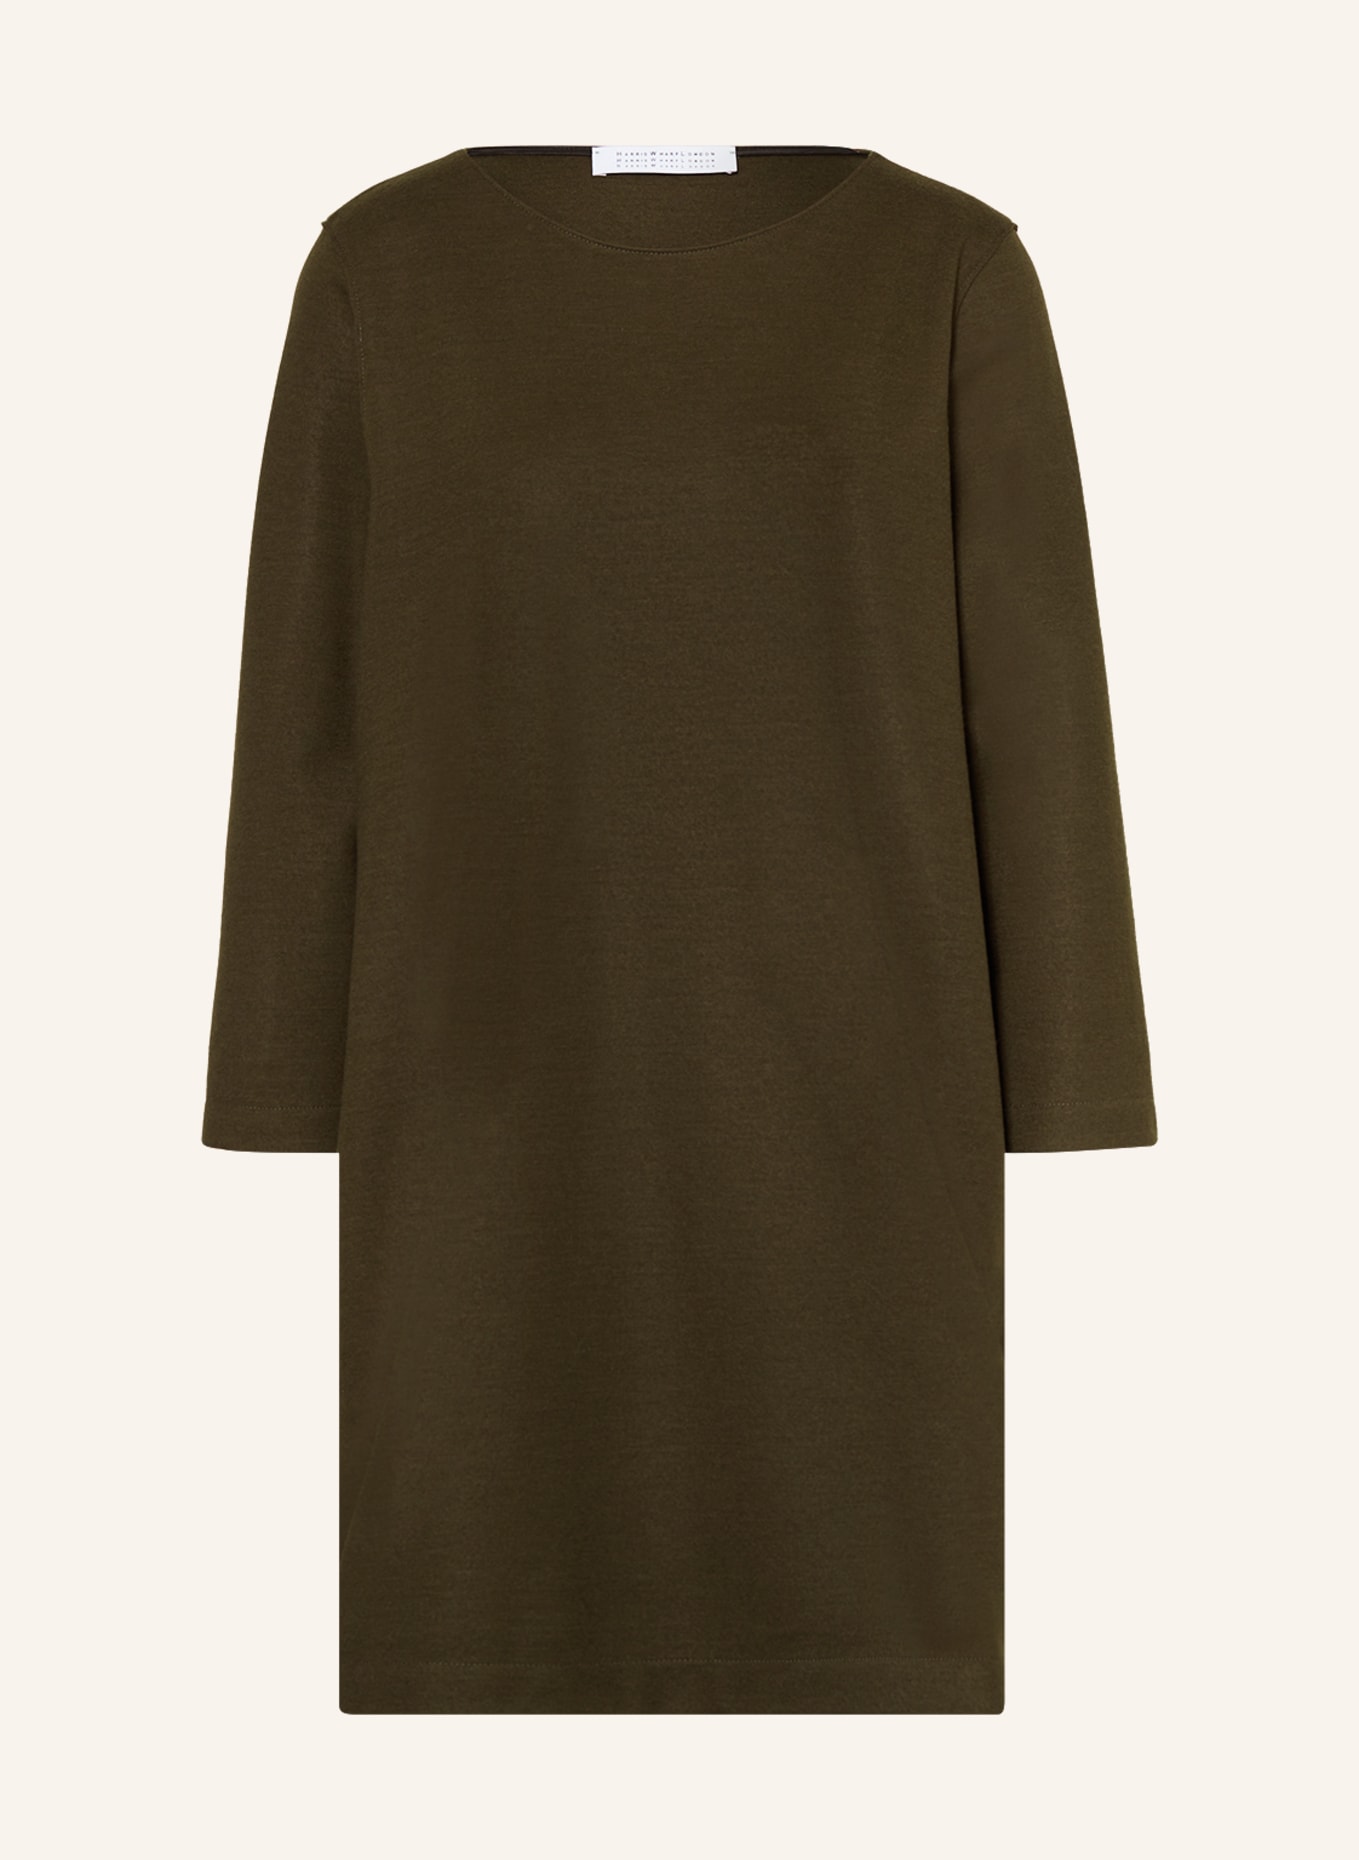 HARRIS WHARF LONDON Kleid mit 3/4-Arm, Farbe: KHAKI (Bild 1)